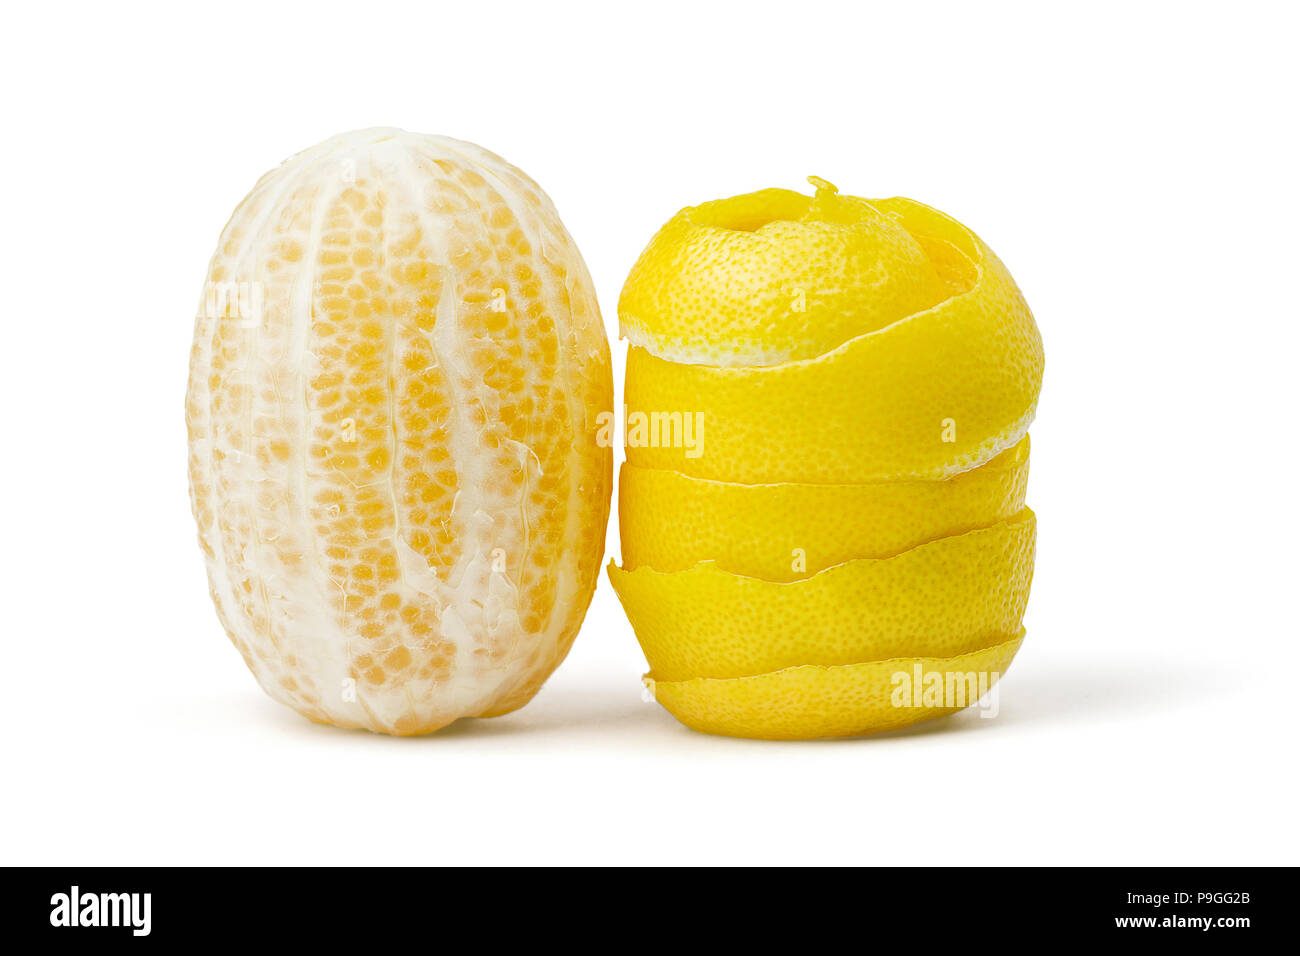 Citron, zeste râpé, sur fond blanc Banque D'Images